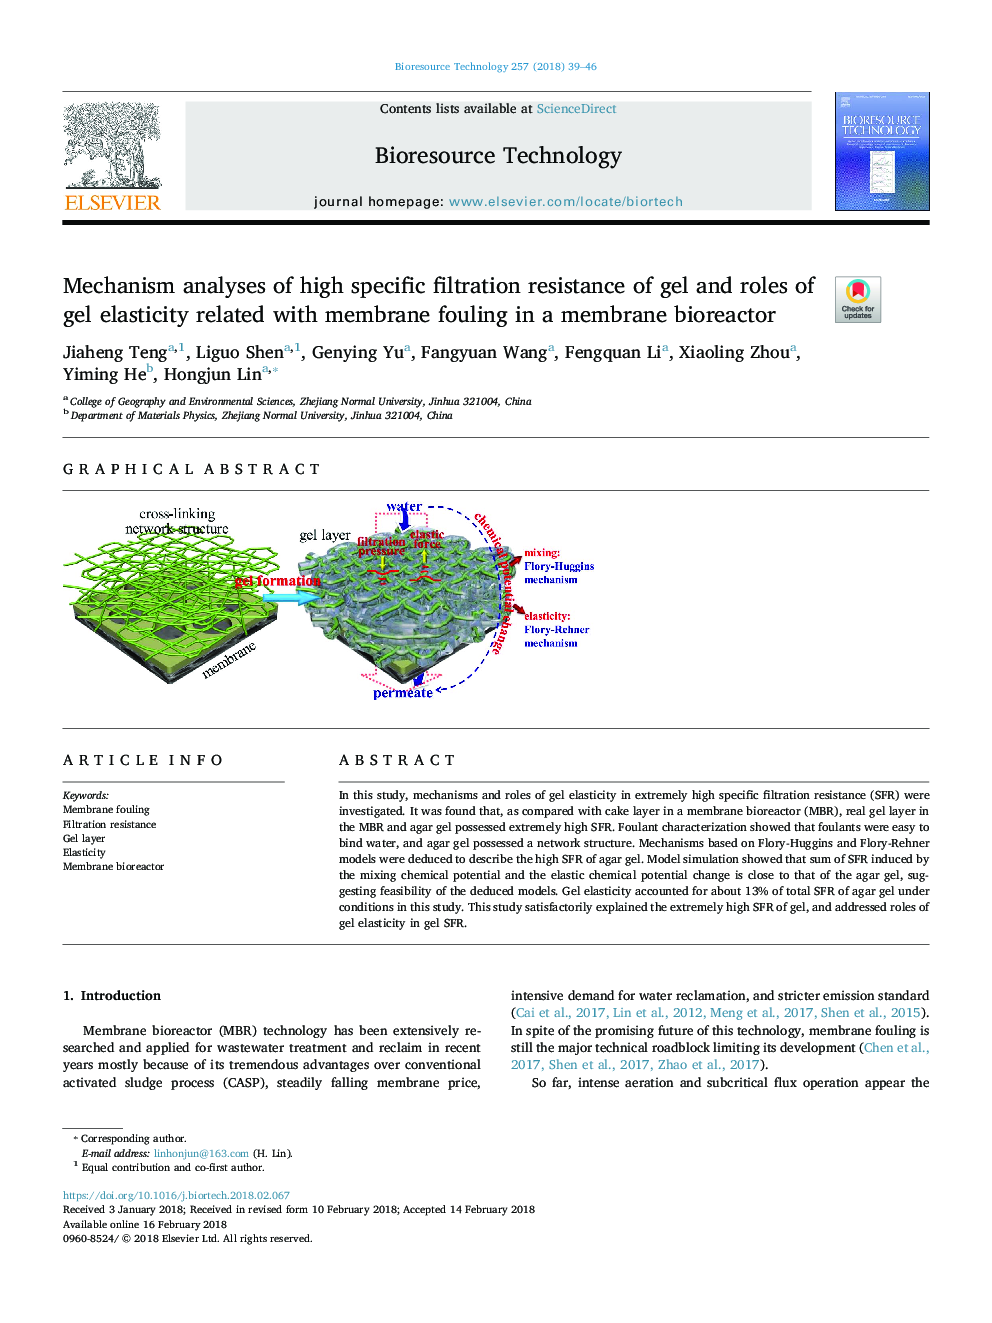 تجزیه و تحلیل مکانیسم از مقاومت بالا در مورد فیلتراسیون ژل و نقش الاستیسیته ژل در ارتباط با ضایعات غشایی در یک بیوراکتور غشایی 